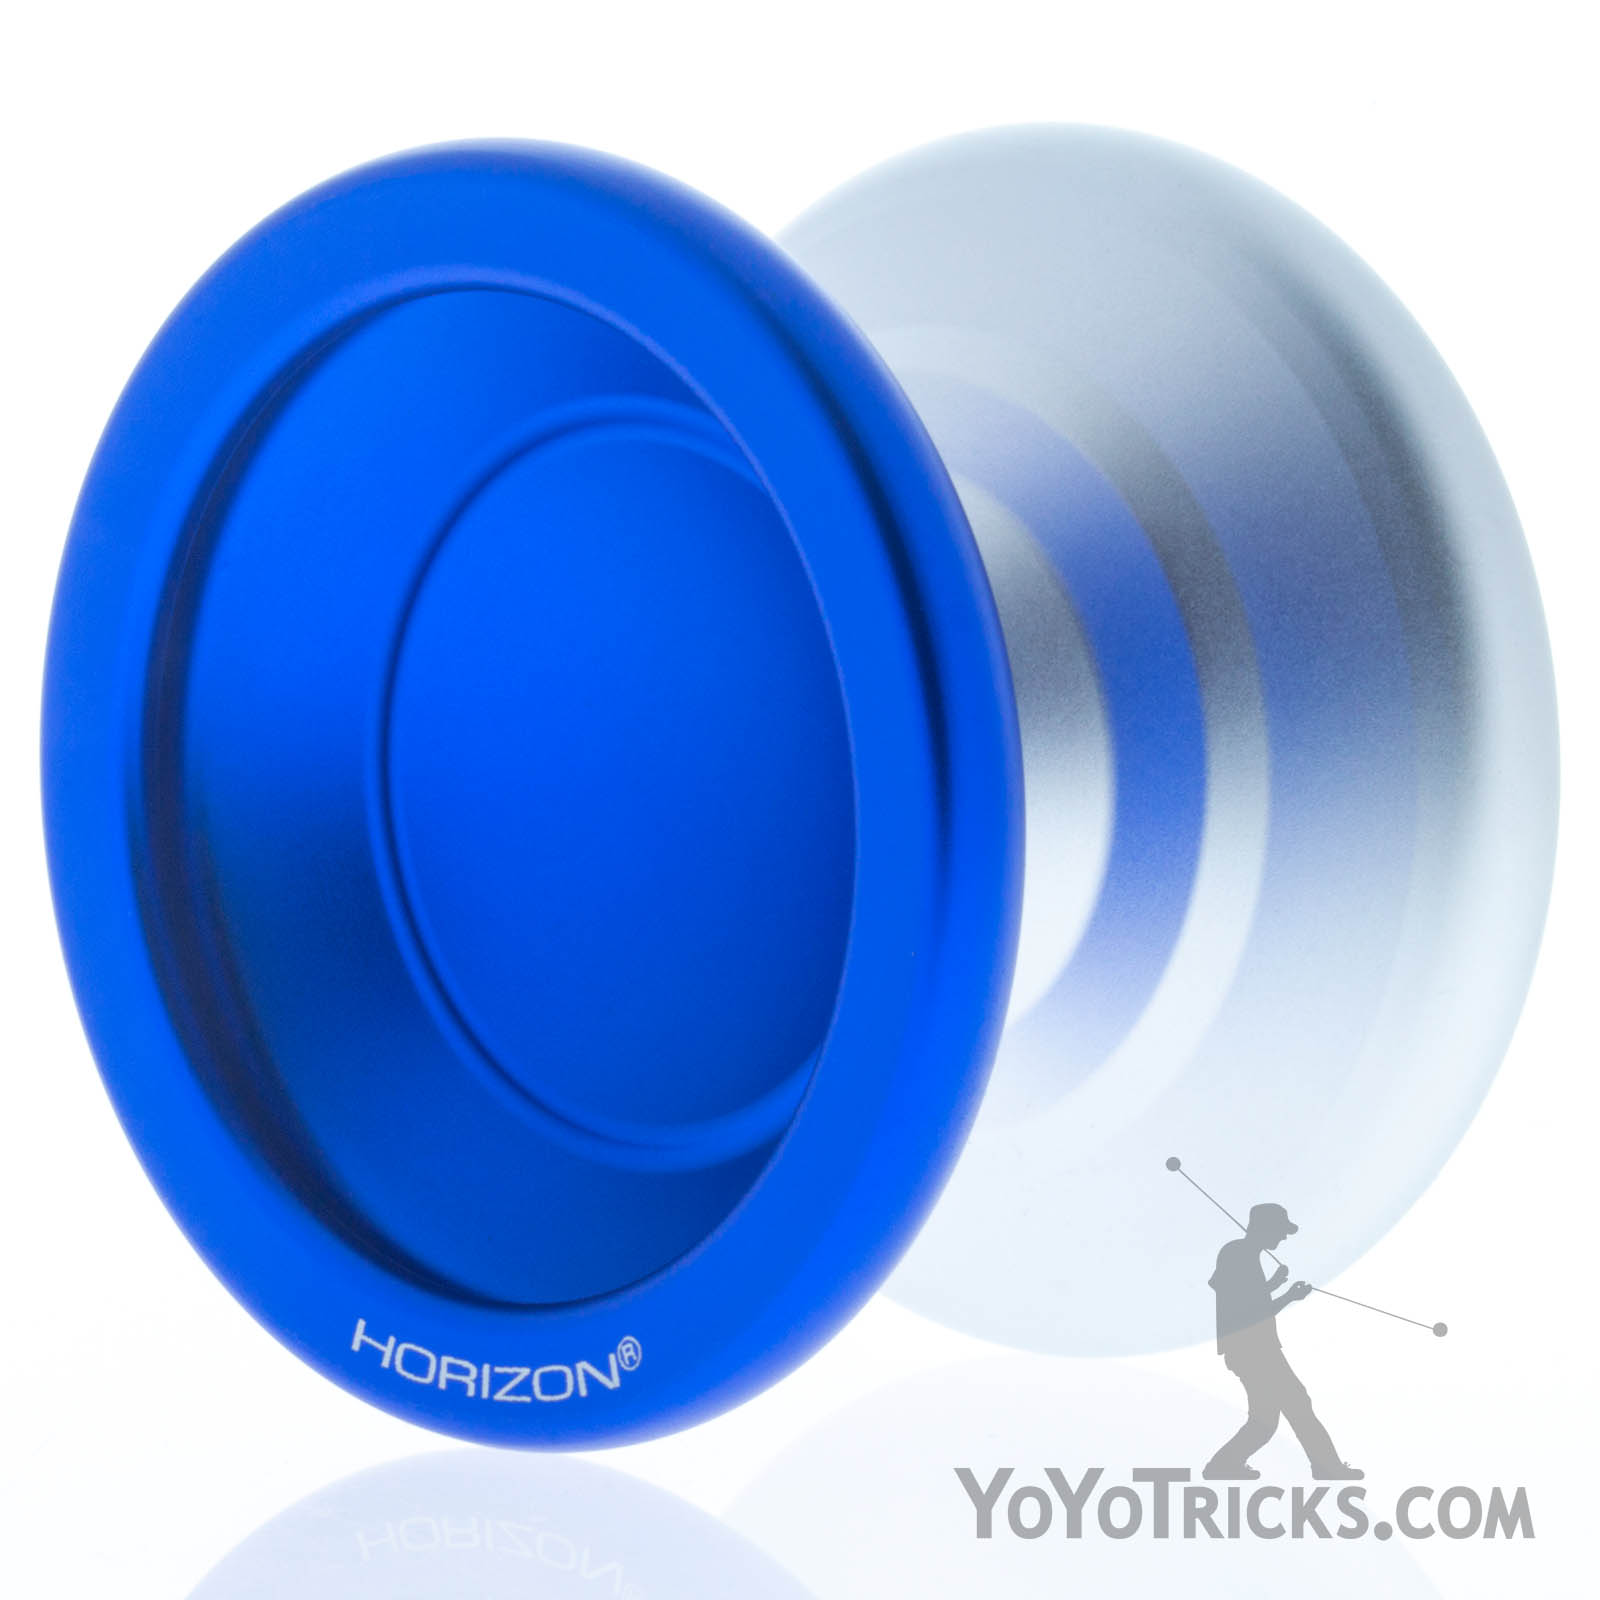 YoYoFactory G5 Premium Collection rot oder silber Toy professional trick yo-yo 